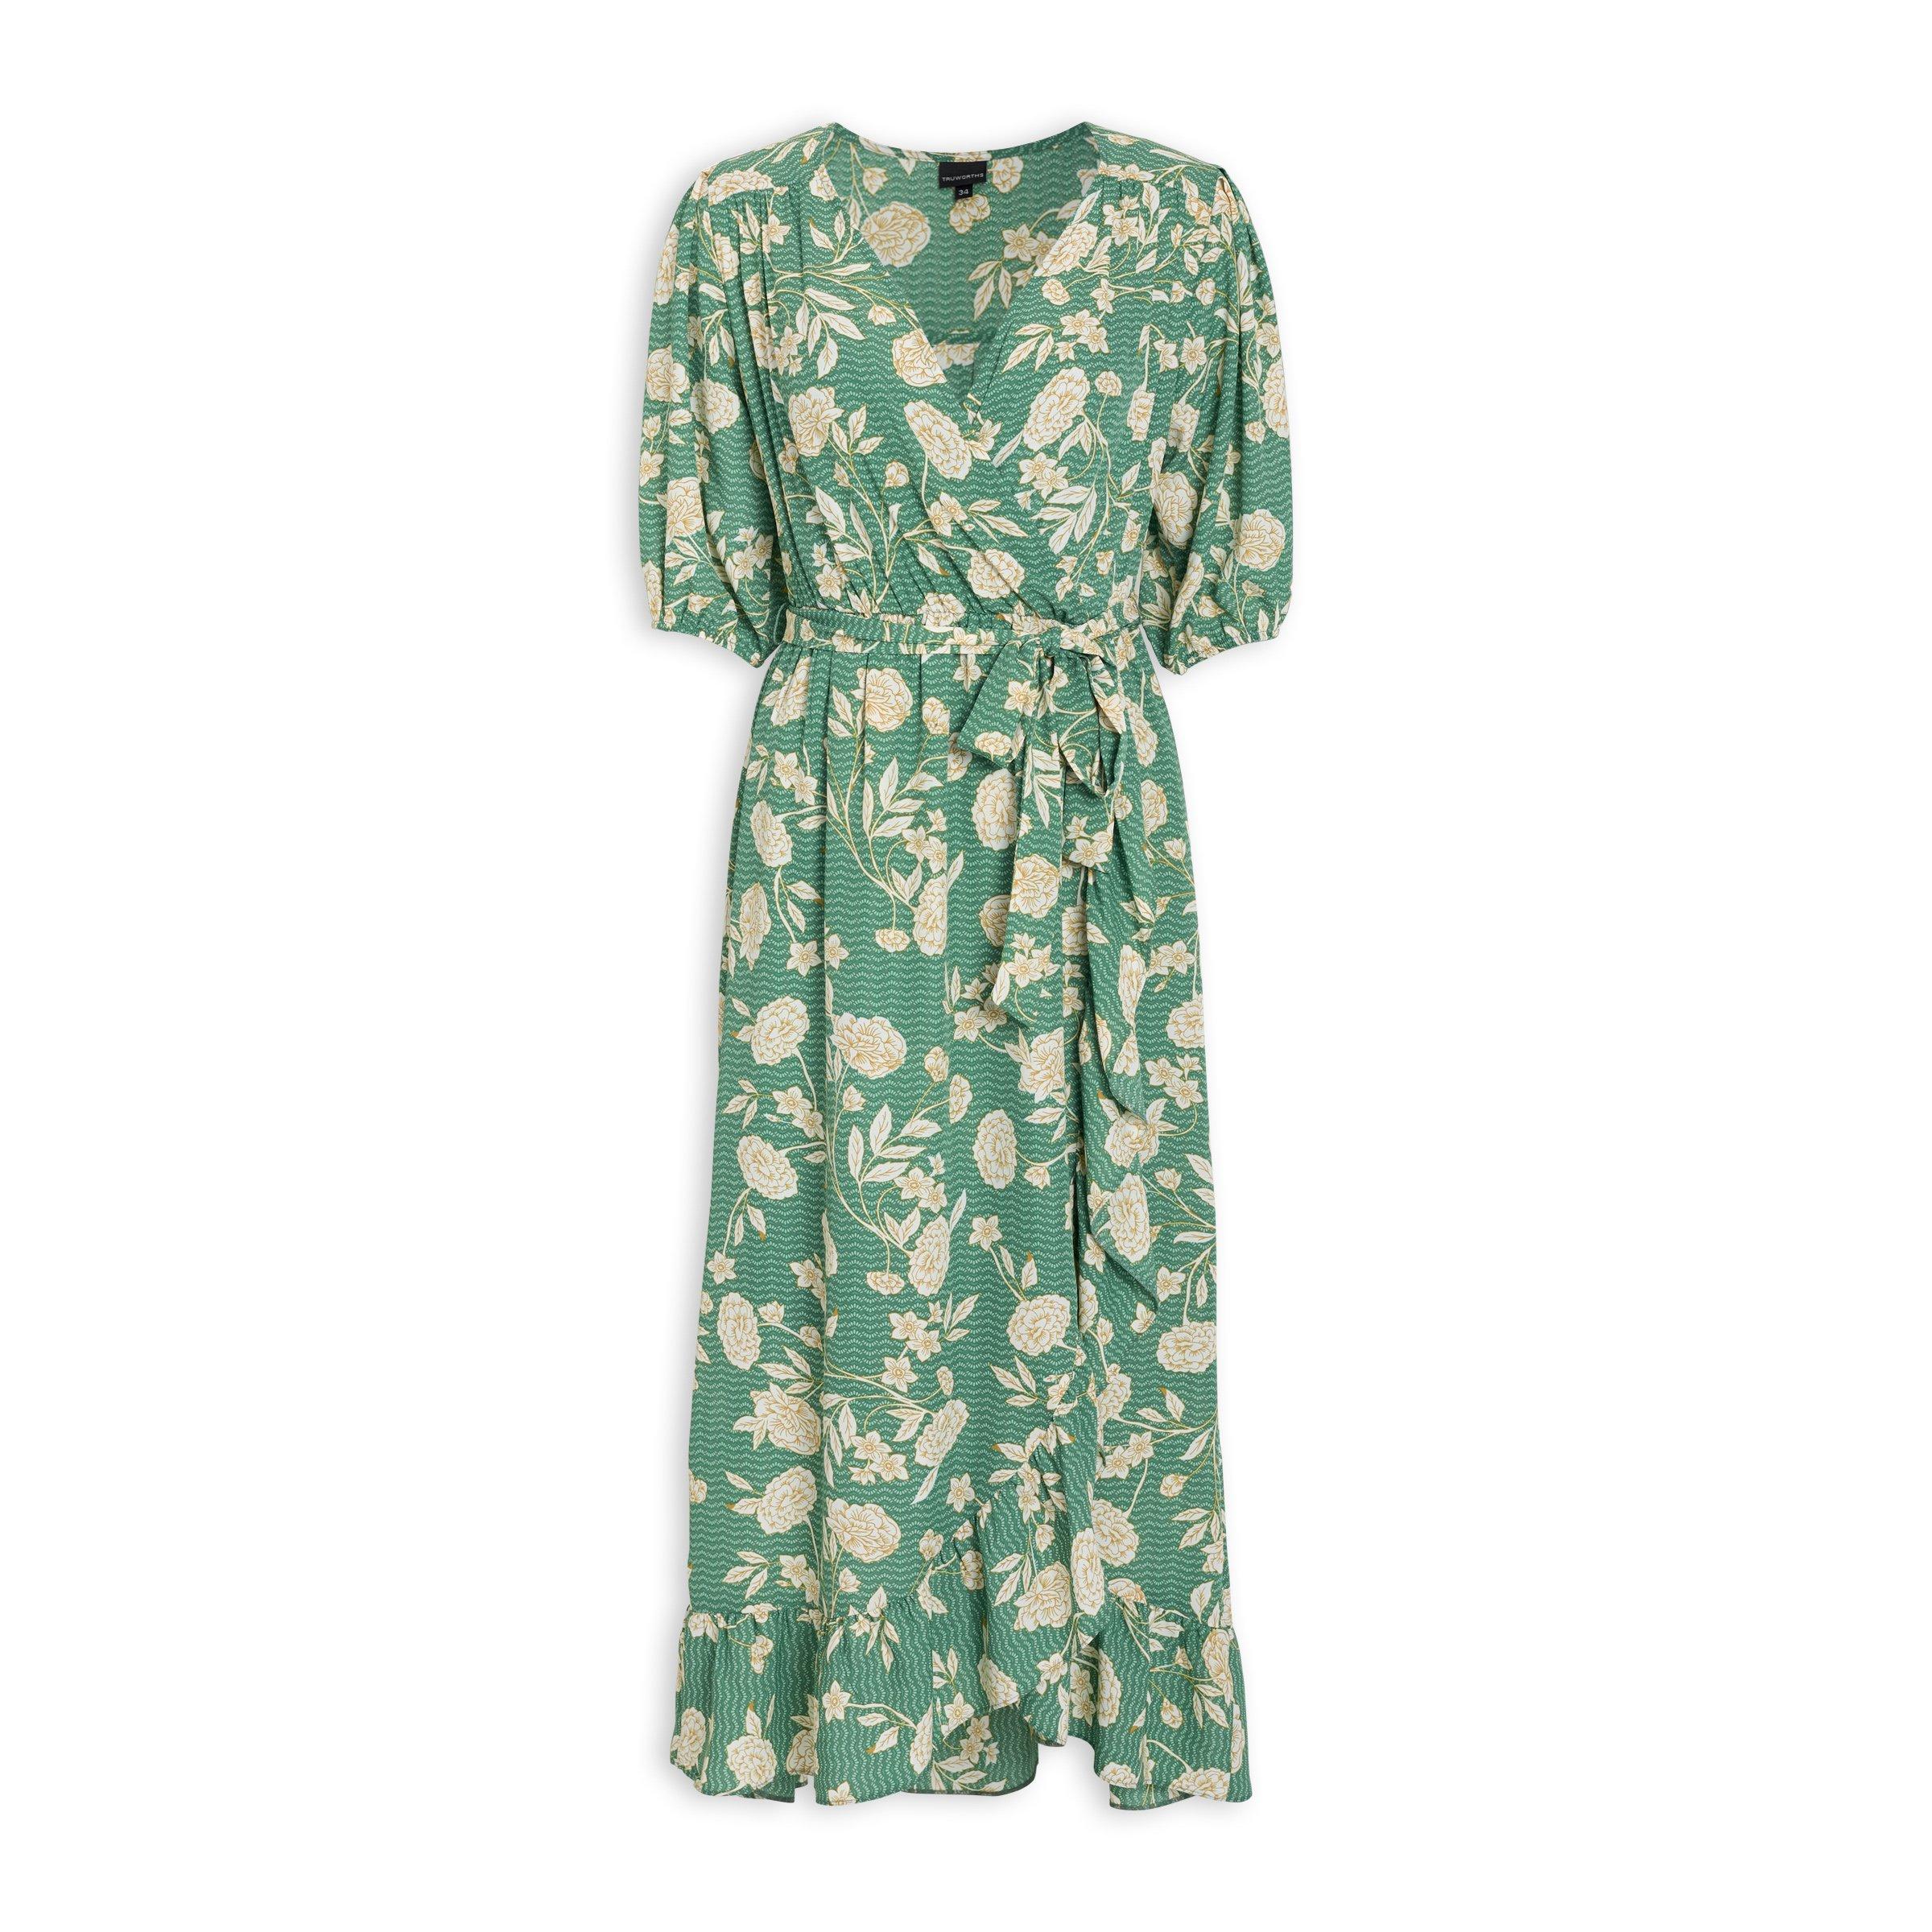 floral dresses truworths | Dresses Images 2022